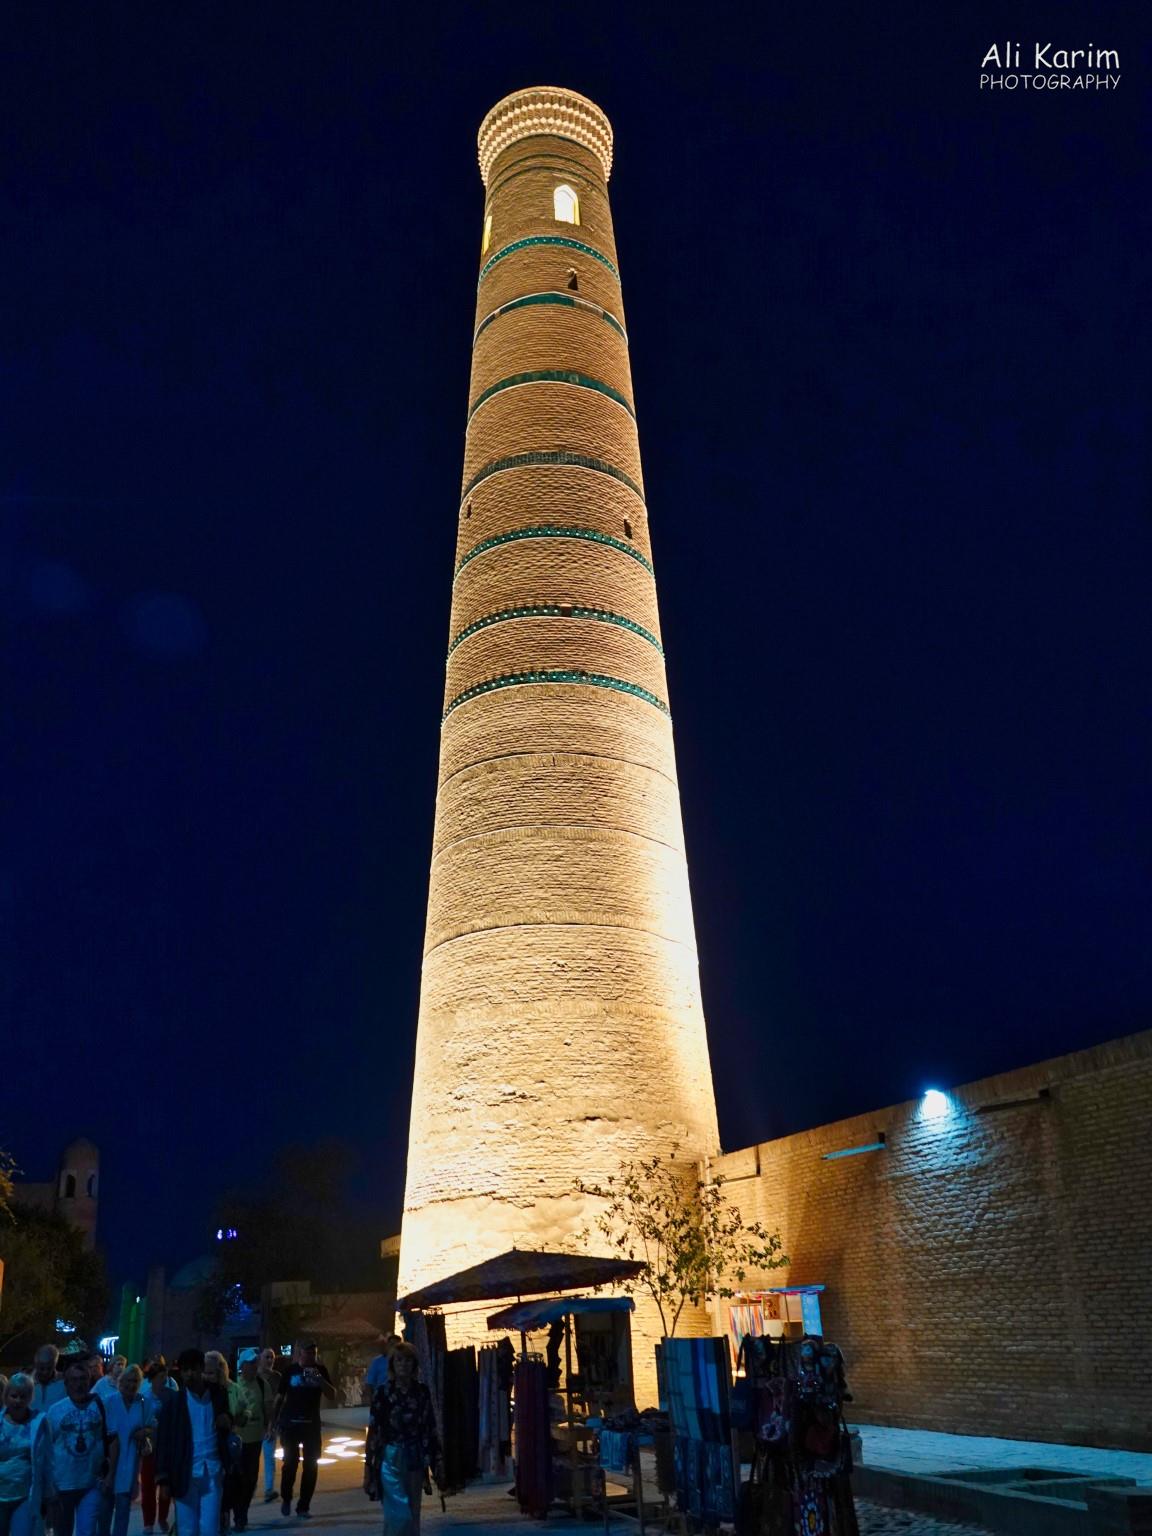 Khiva, Oct 2019, Another impressive minaret